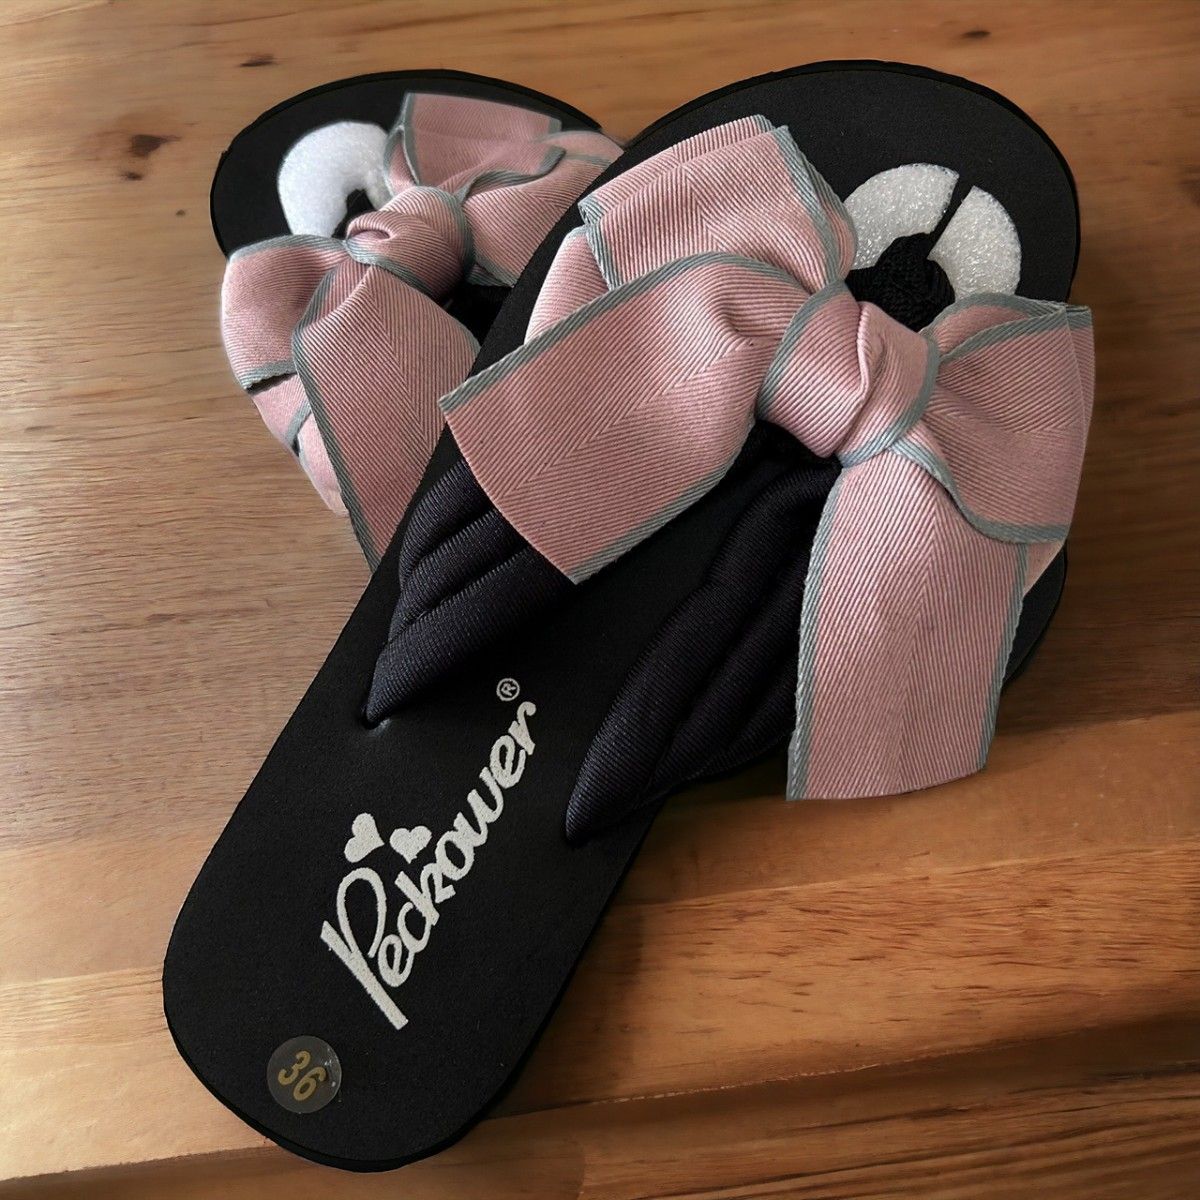 リボン サンダル ビーチ 海 プール レジャー 夏祭り 浴衣 歩きやすい くすみカラー ブラック ピンク オルチャン 韓国 可愛い